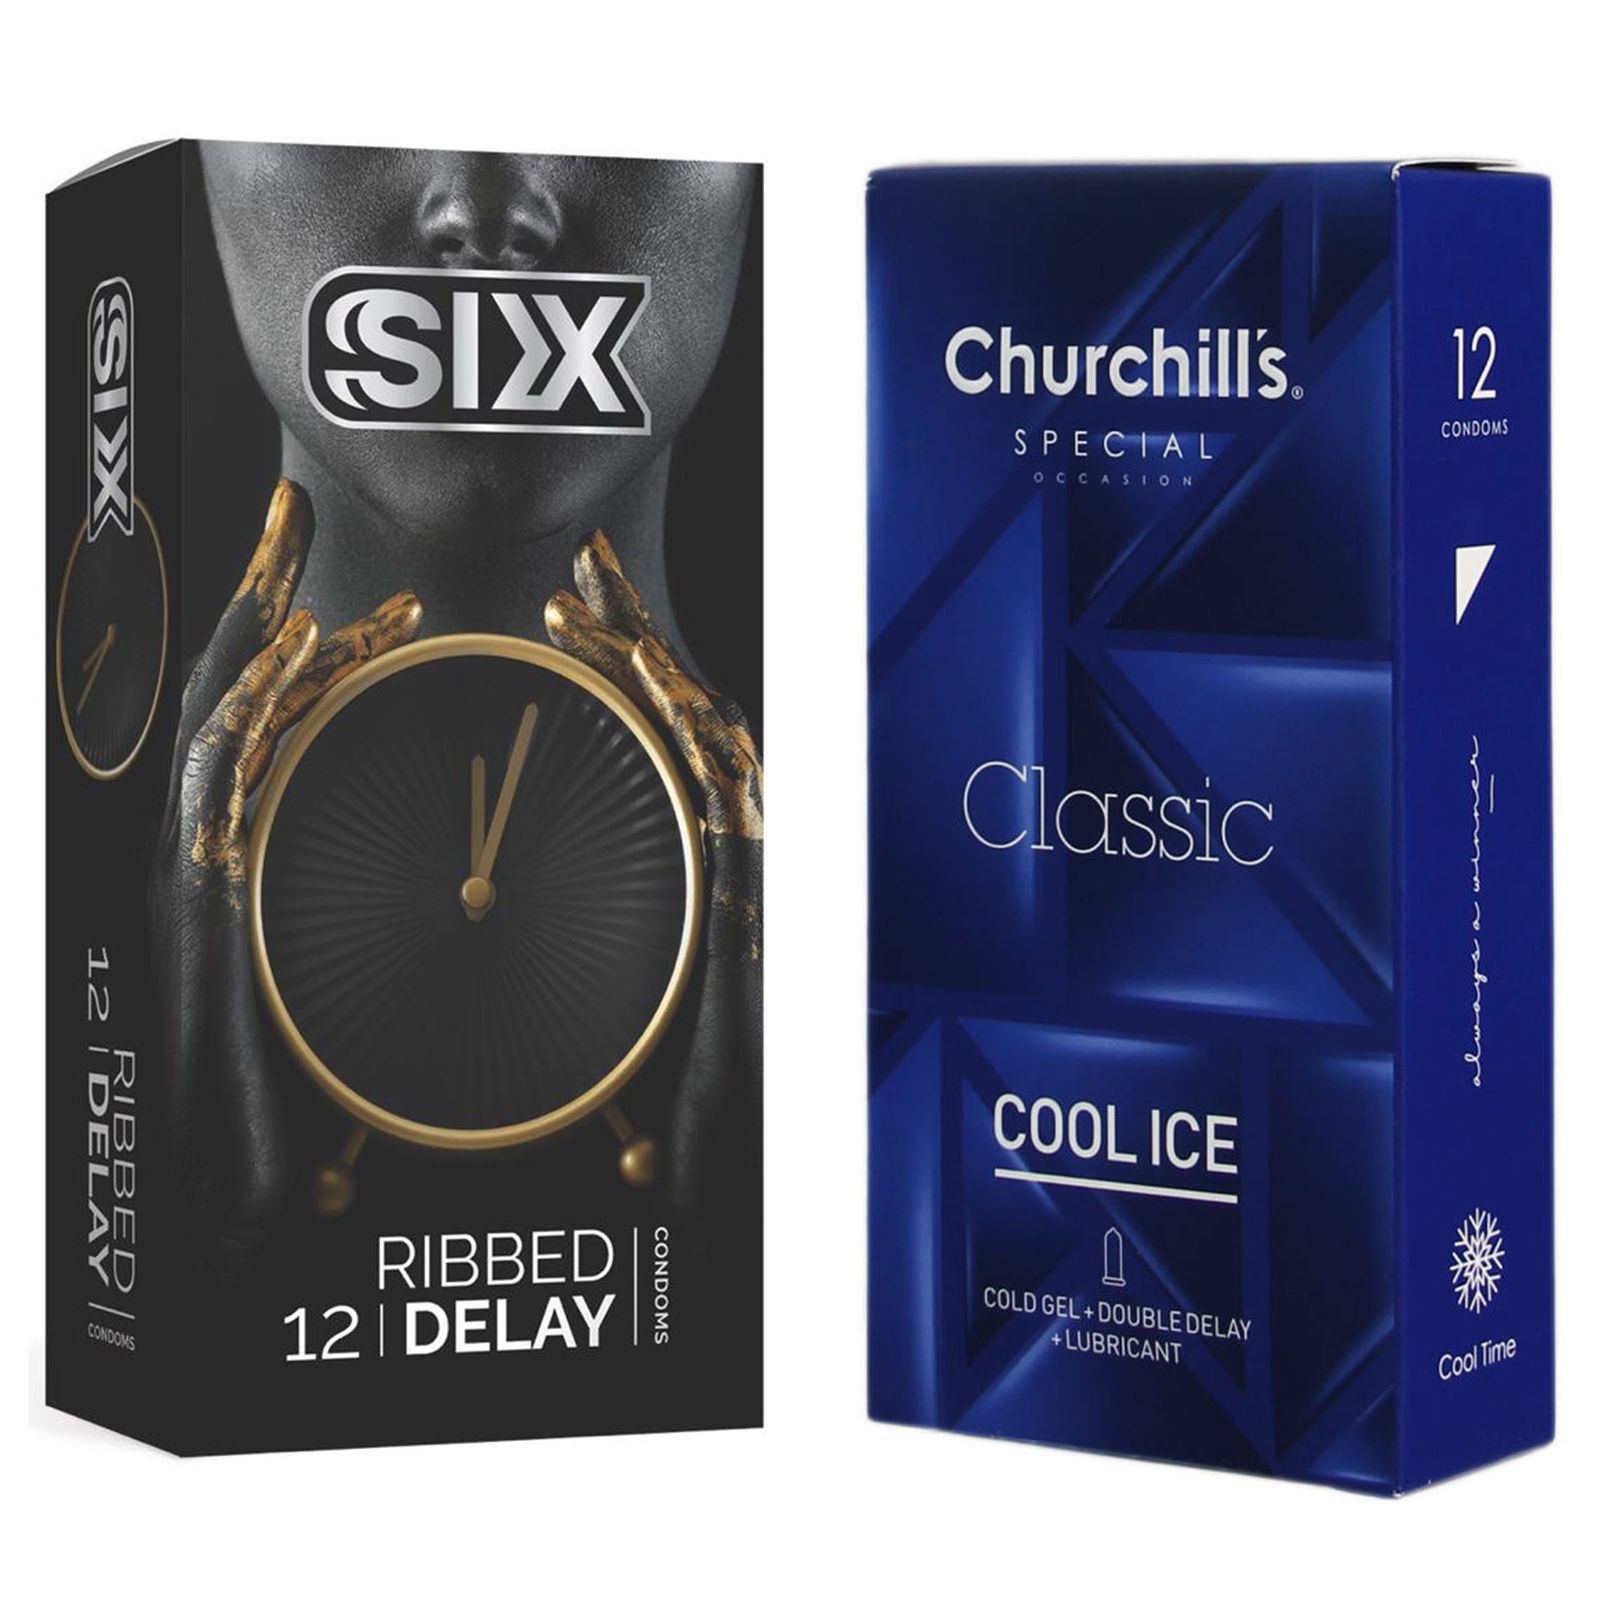 کاندوم چرچیلز مدل Cool Ice بسته 12 عددی به همراه کاندوم سیکس مدل تاخیری شیاردار بسته 12 عددی